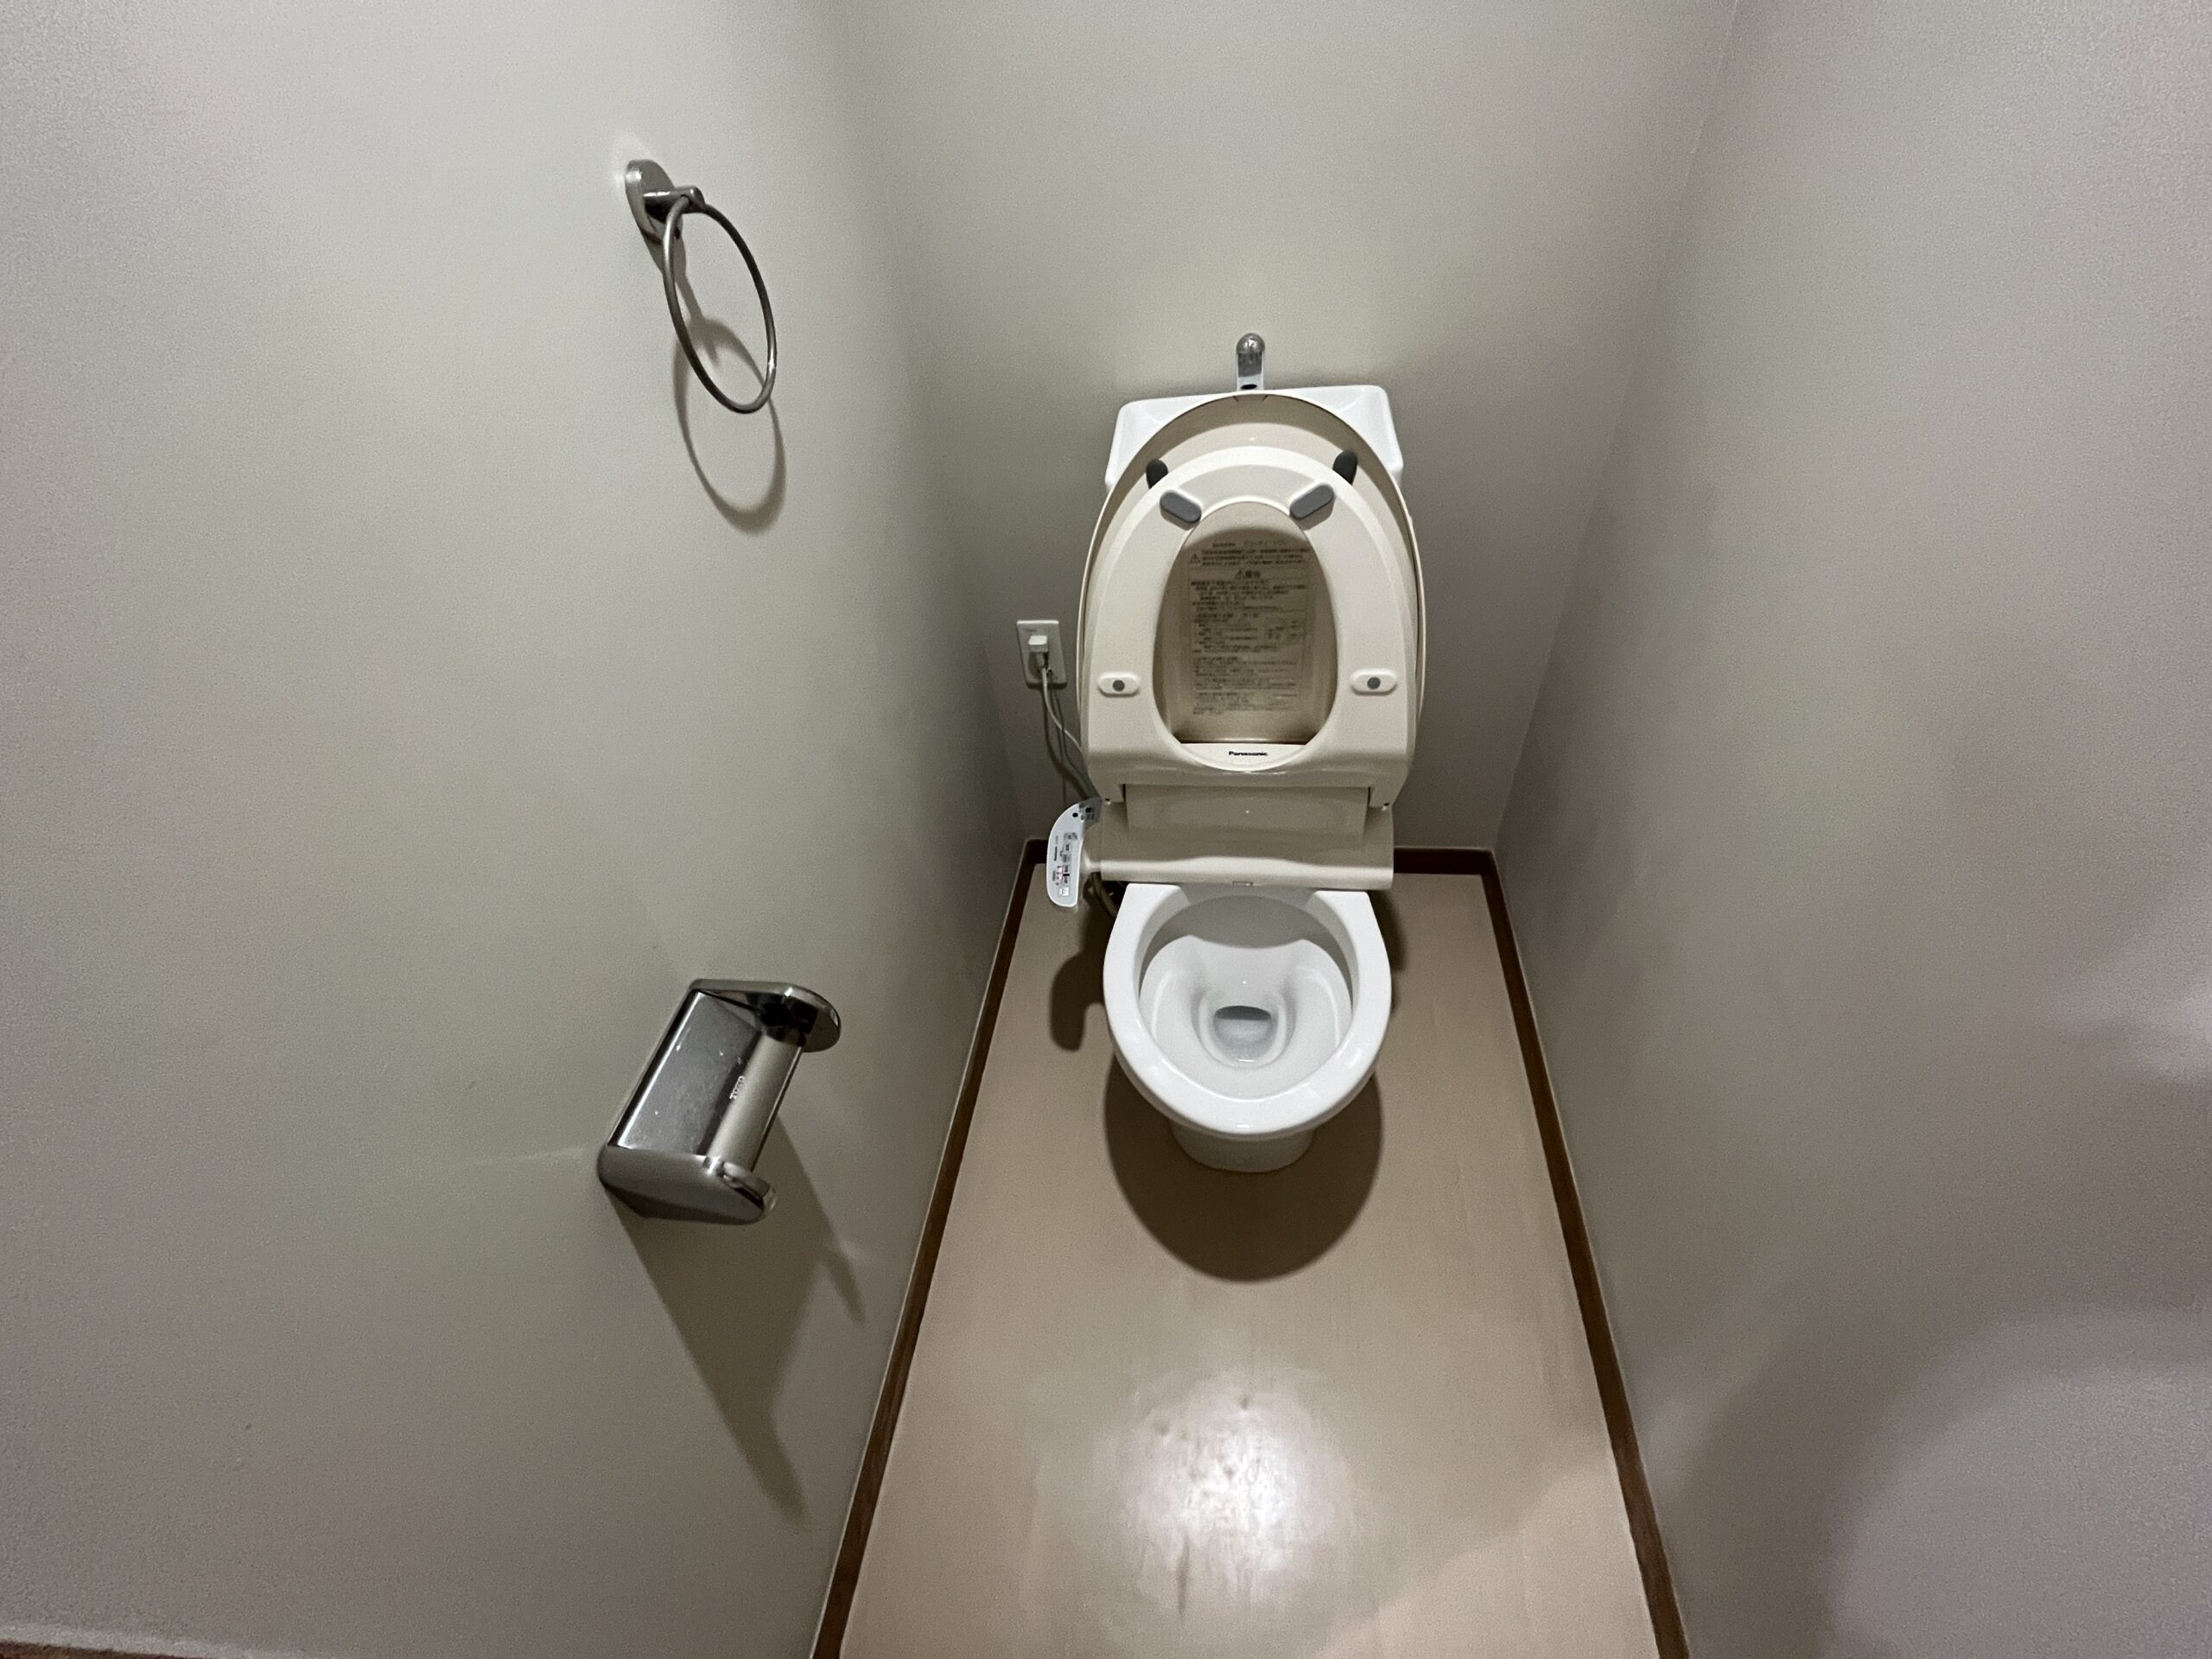 トイレのイメージ画像